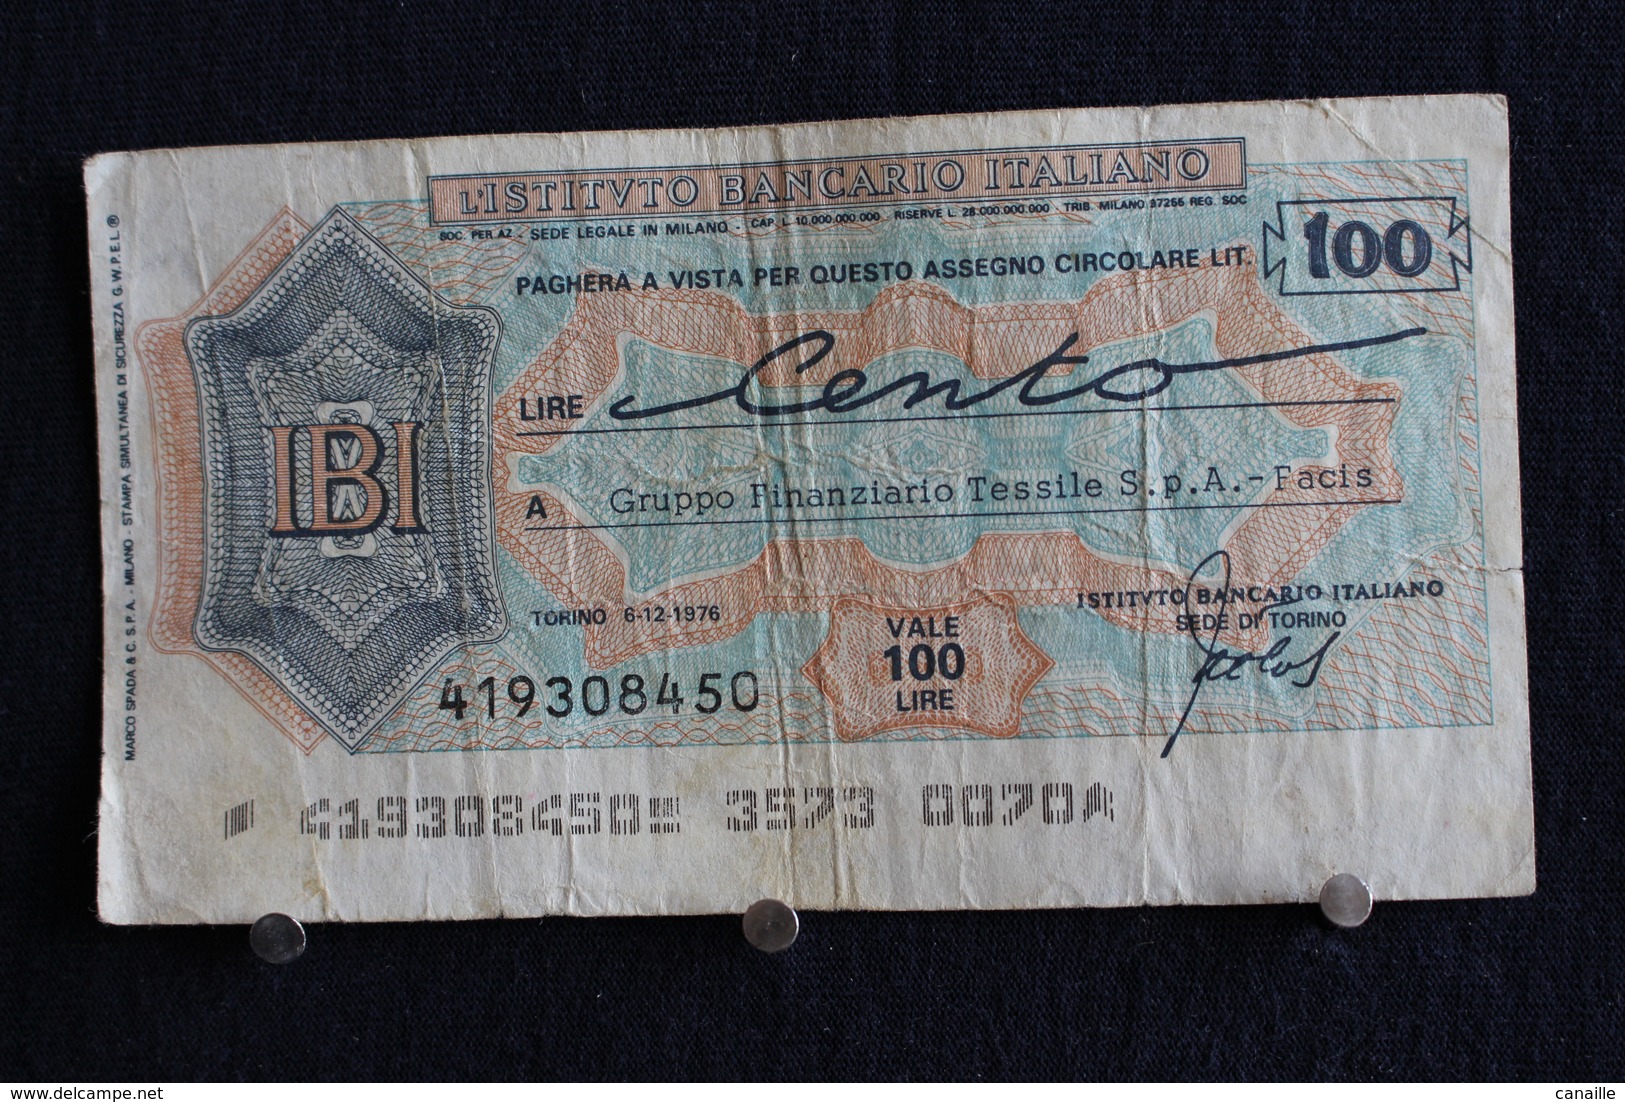 10 / Italie / 1946: Royaume / Biglietti Di Stato - L'Istituto Bancario Italiano Torino 6/12/1976 - Vale 100 Lire - - 100 Liras